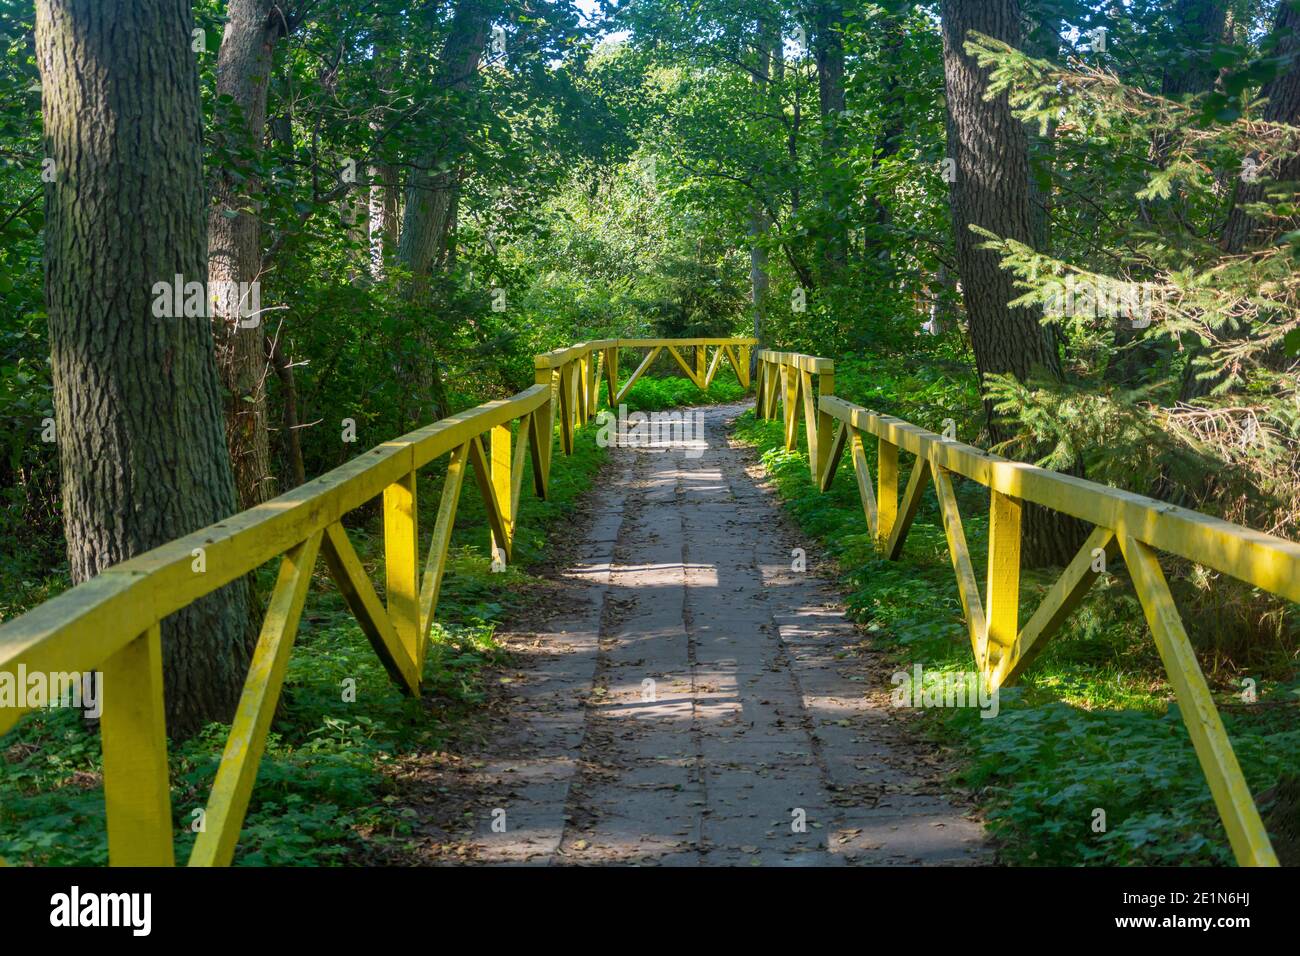 Chemin de forêt pour la marche avec des rambardes en bois jaune. Concept d'écologie, protection des forêts. Mise au point sélective. Banque D'Images